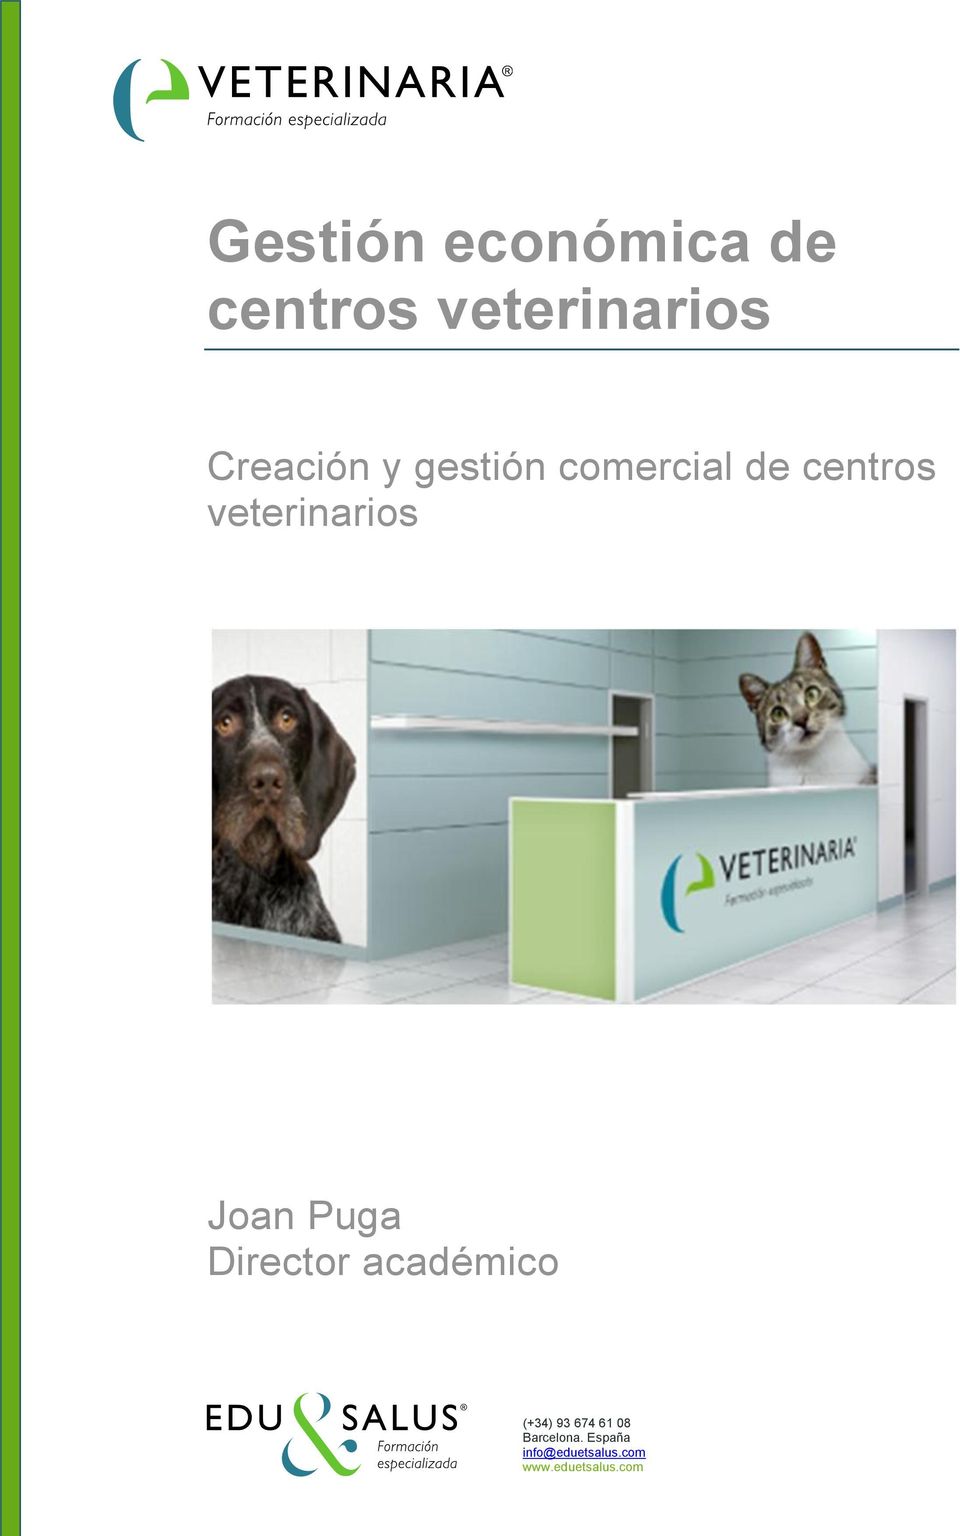 veterinarios Director académico (+34) 93 674 61